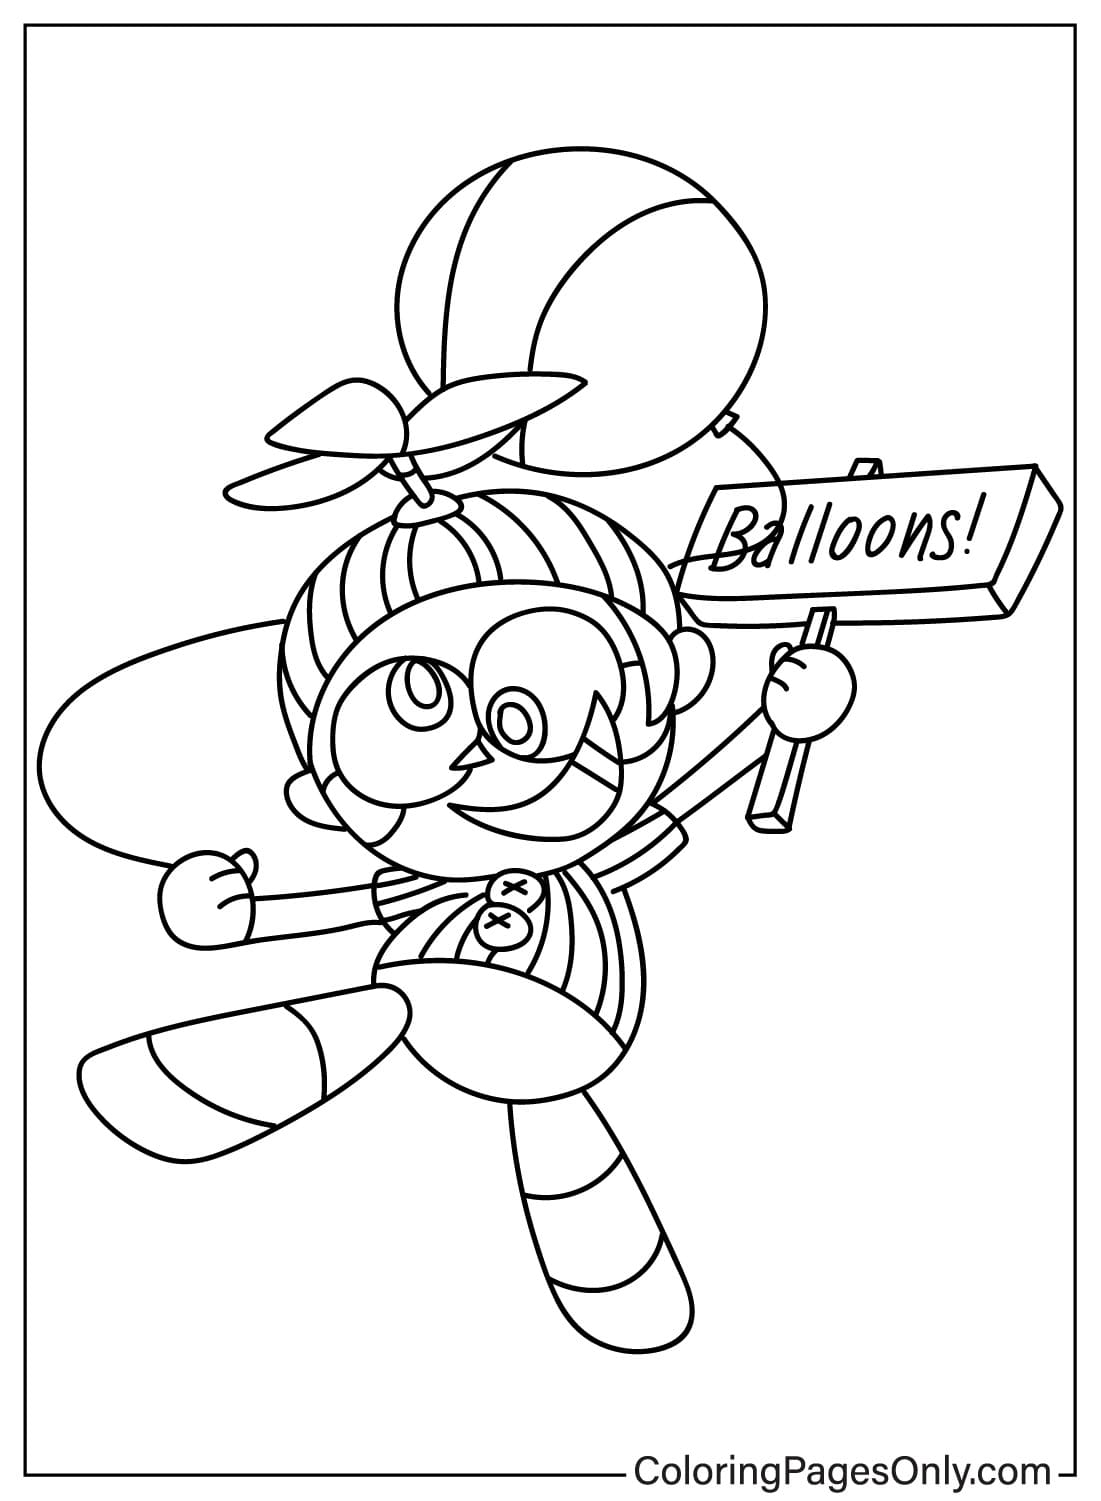 Immagini Balloon Boy da colorare di Balloon Boy